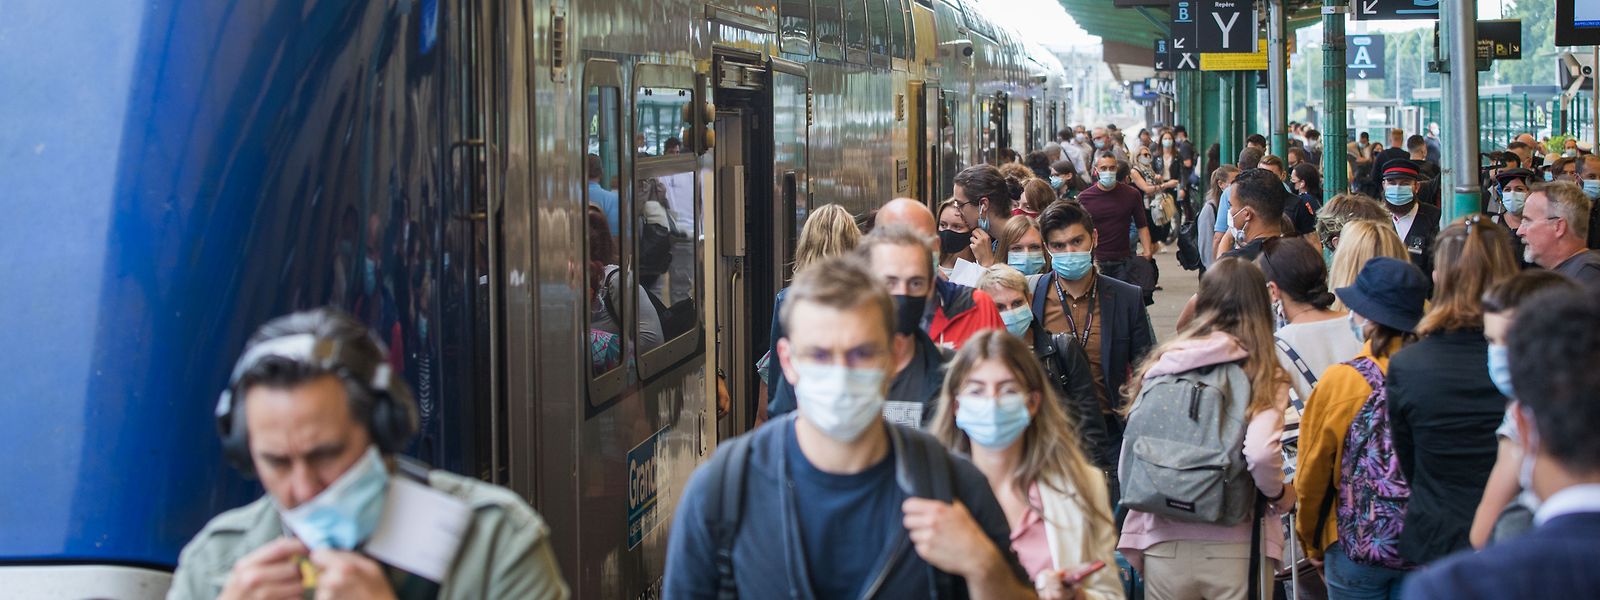 La ministre de la Santé Brigitte Bourguignon recommande de remettre le masque dans les transports en commun en France.